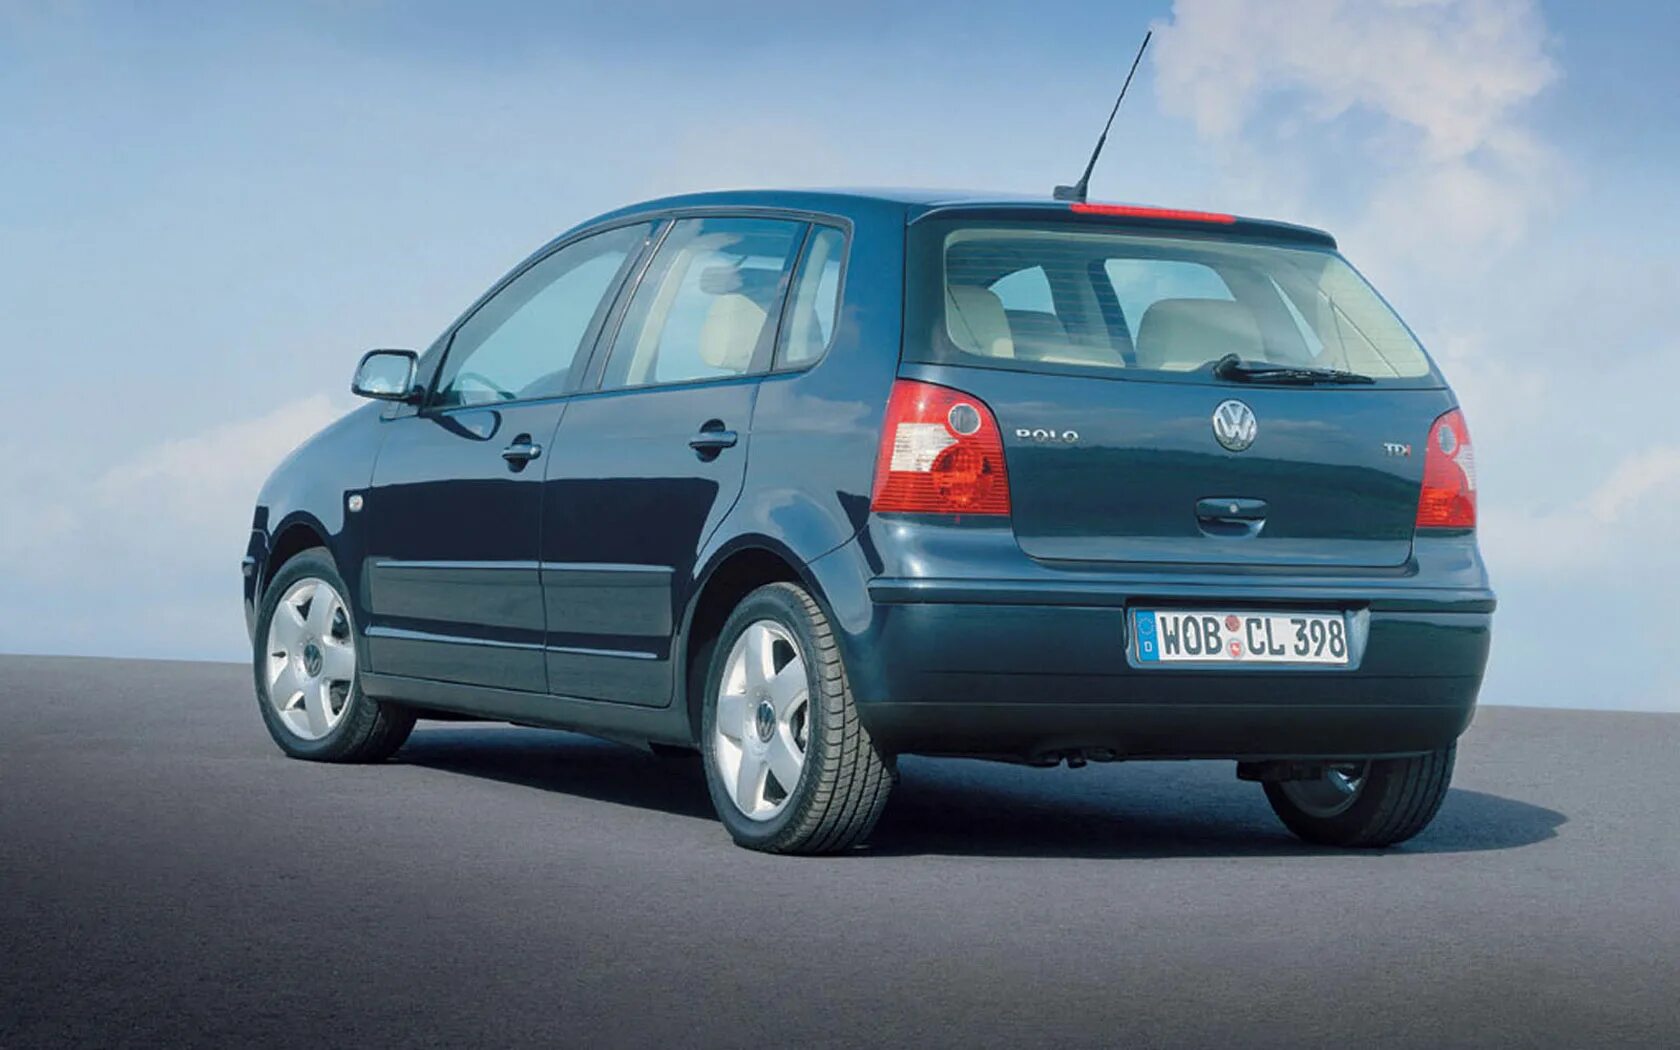 VW Polo 2002 1.4. Фольксваген поло хэтчбек 2002 1.4. Фольксваген поло 2002 1.2. Volkswagen Polo хэтчбек 2002. Поло 4 хэтчбек